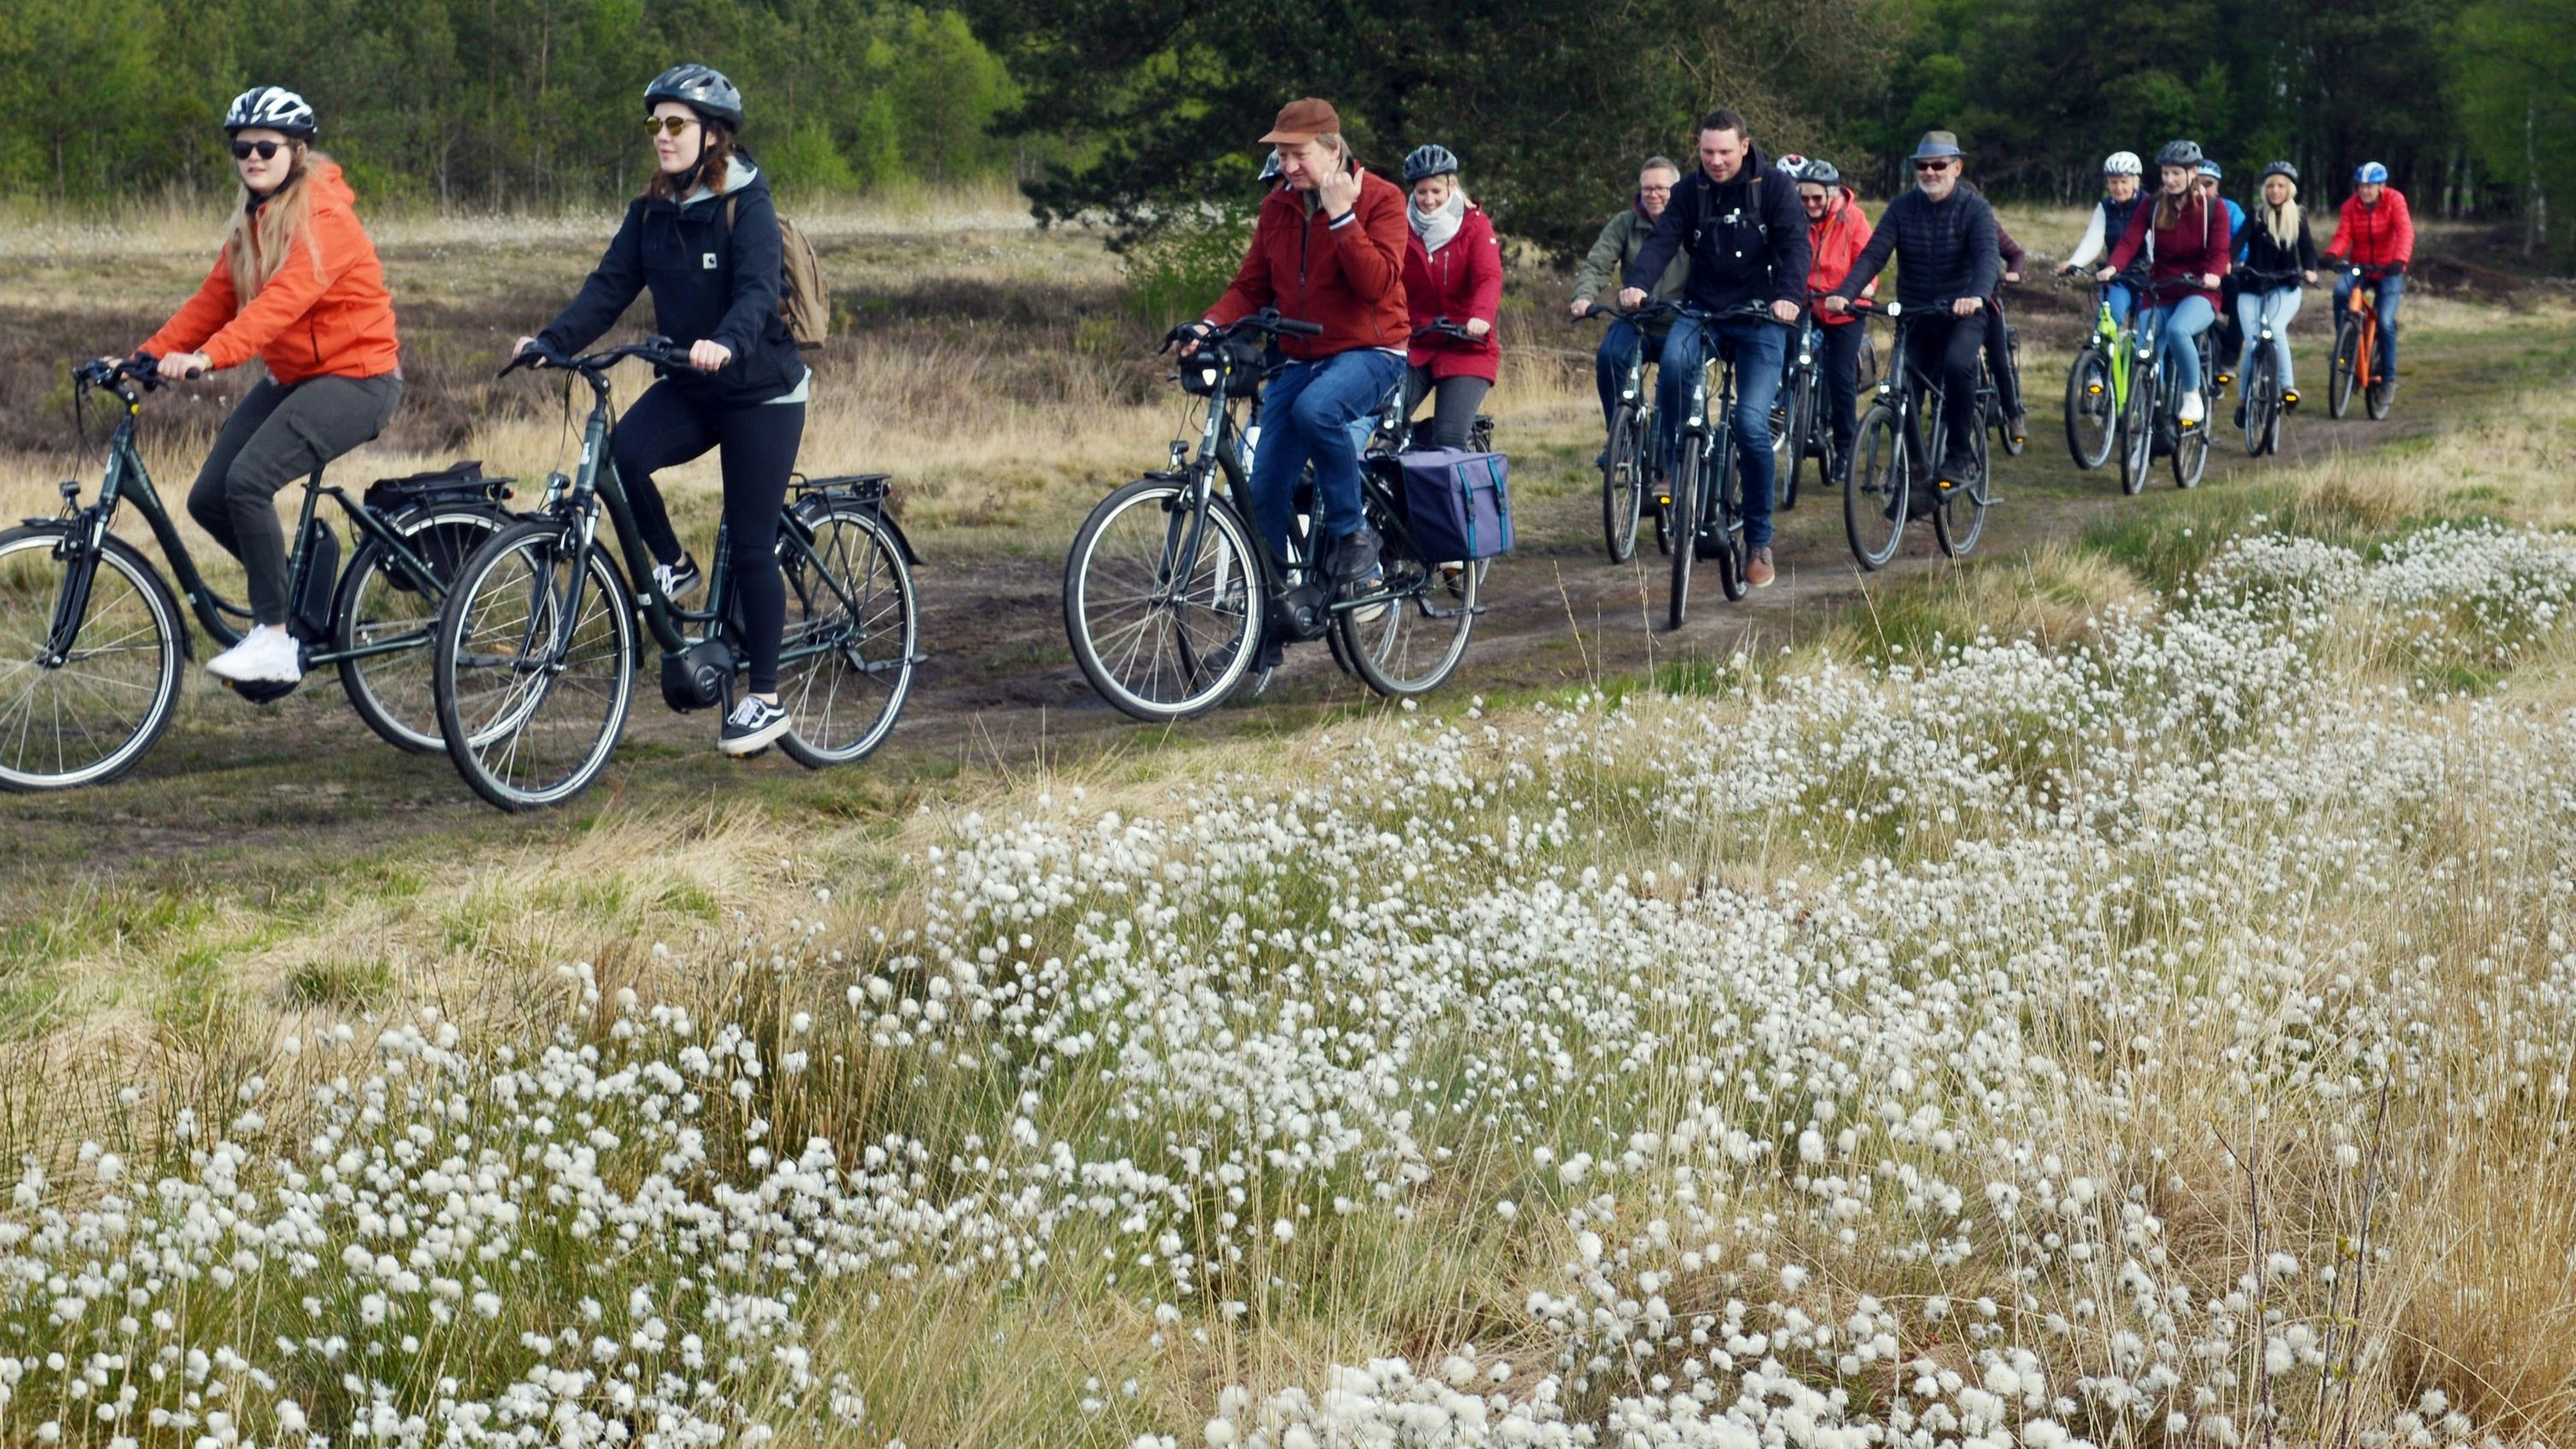 „So schmeckt Heimat“: Zu den landschaftlichen Attraktionen der neuen E-Bike-Tagestour gehört die Fahrt durchs Hahnenmoor, das im Mai durch die Wollgrasblüte ein eindrucksvolles Erlebnis ist. Foto: W. Siemer